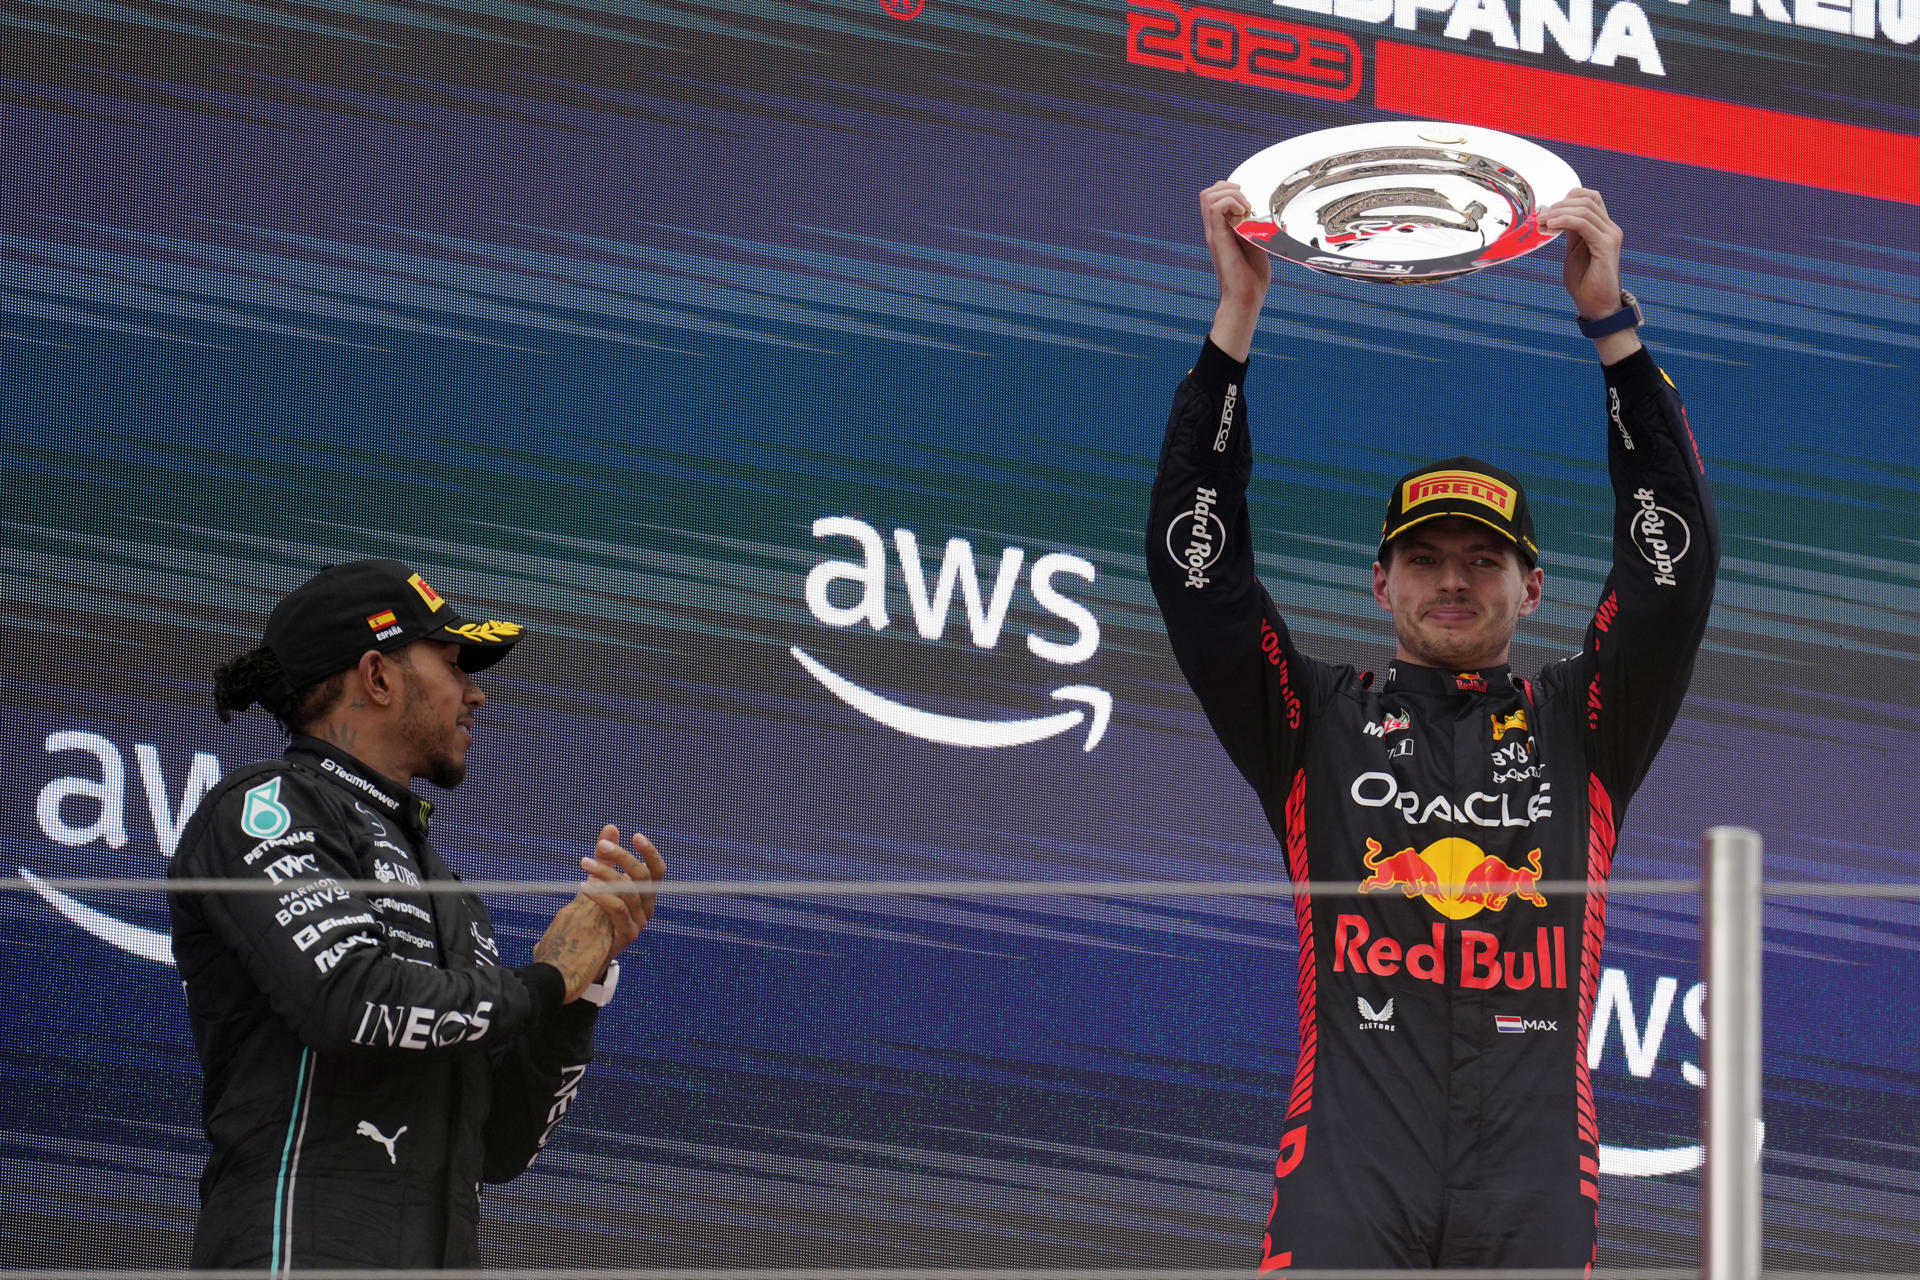 La F1 comienza la temporada más larga de su historia, con Red Bull como el rival a vencer